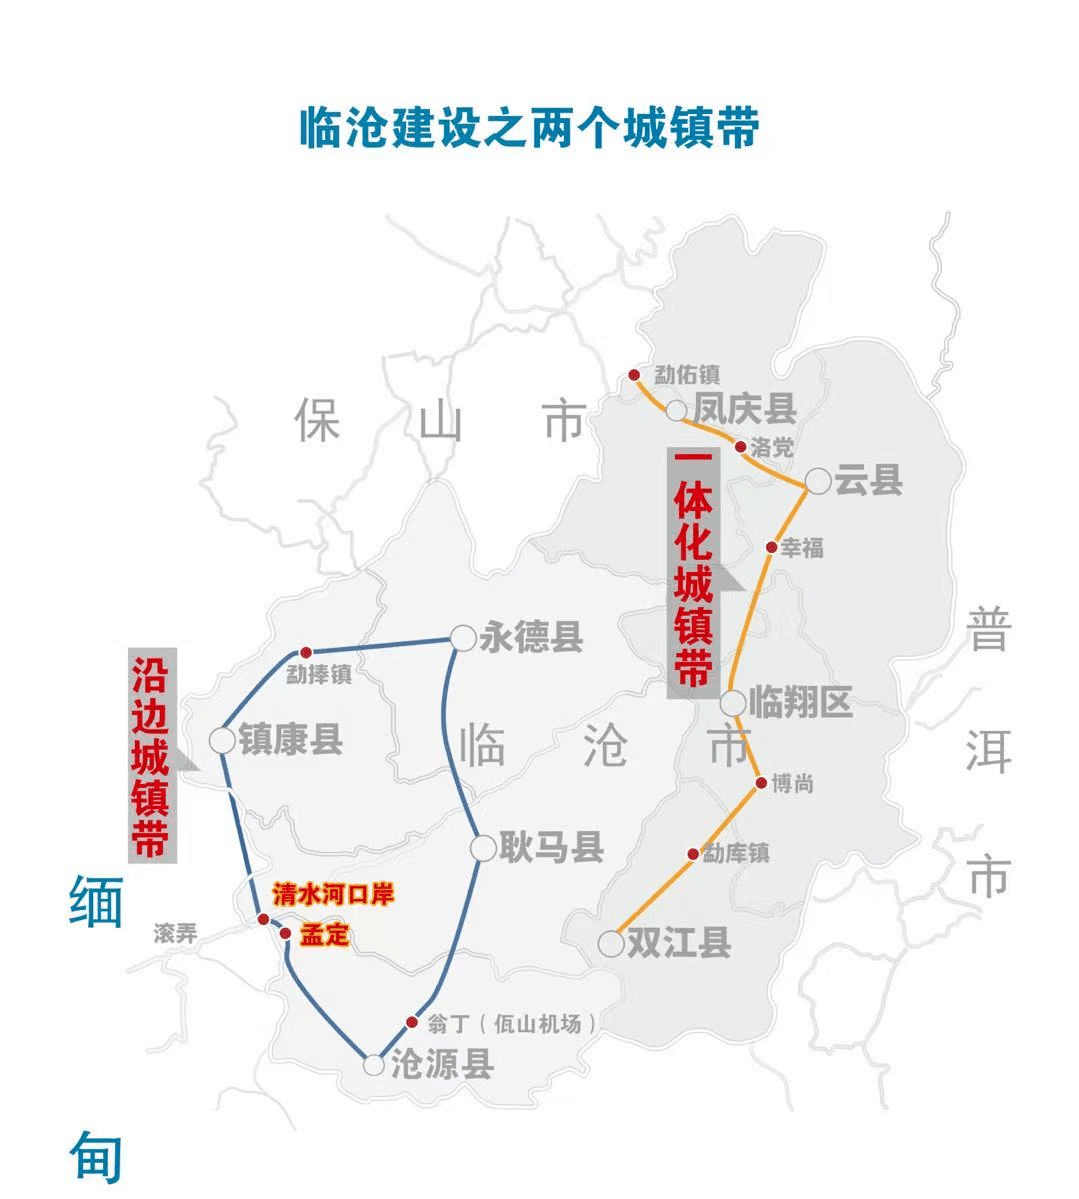 凤庆通用机场开工:孟定要建区域性国际新兴口岸城市